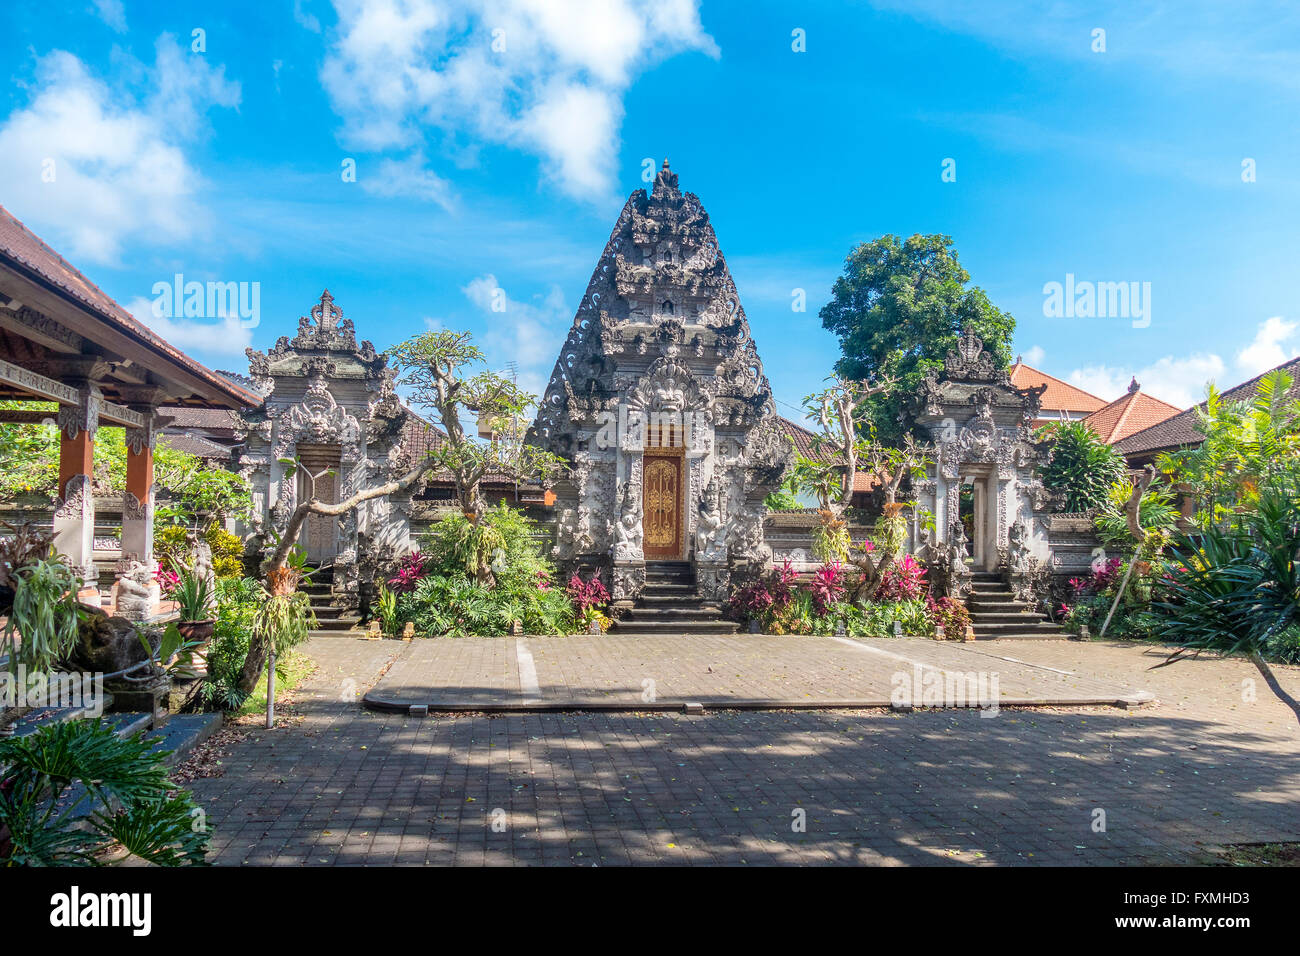 L'architecture traditionnelle de Bali, Ubud, Bali, Indonésie Banque D'Images